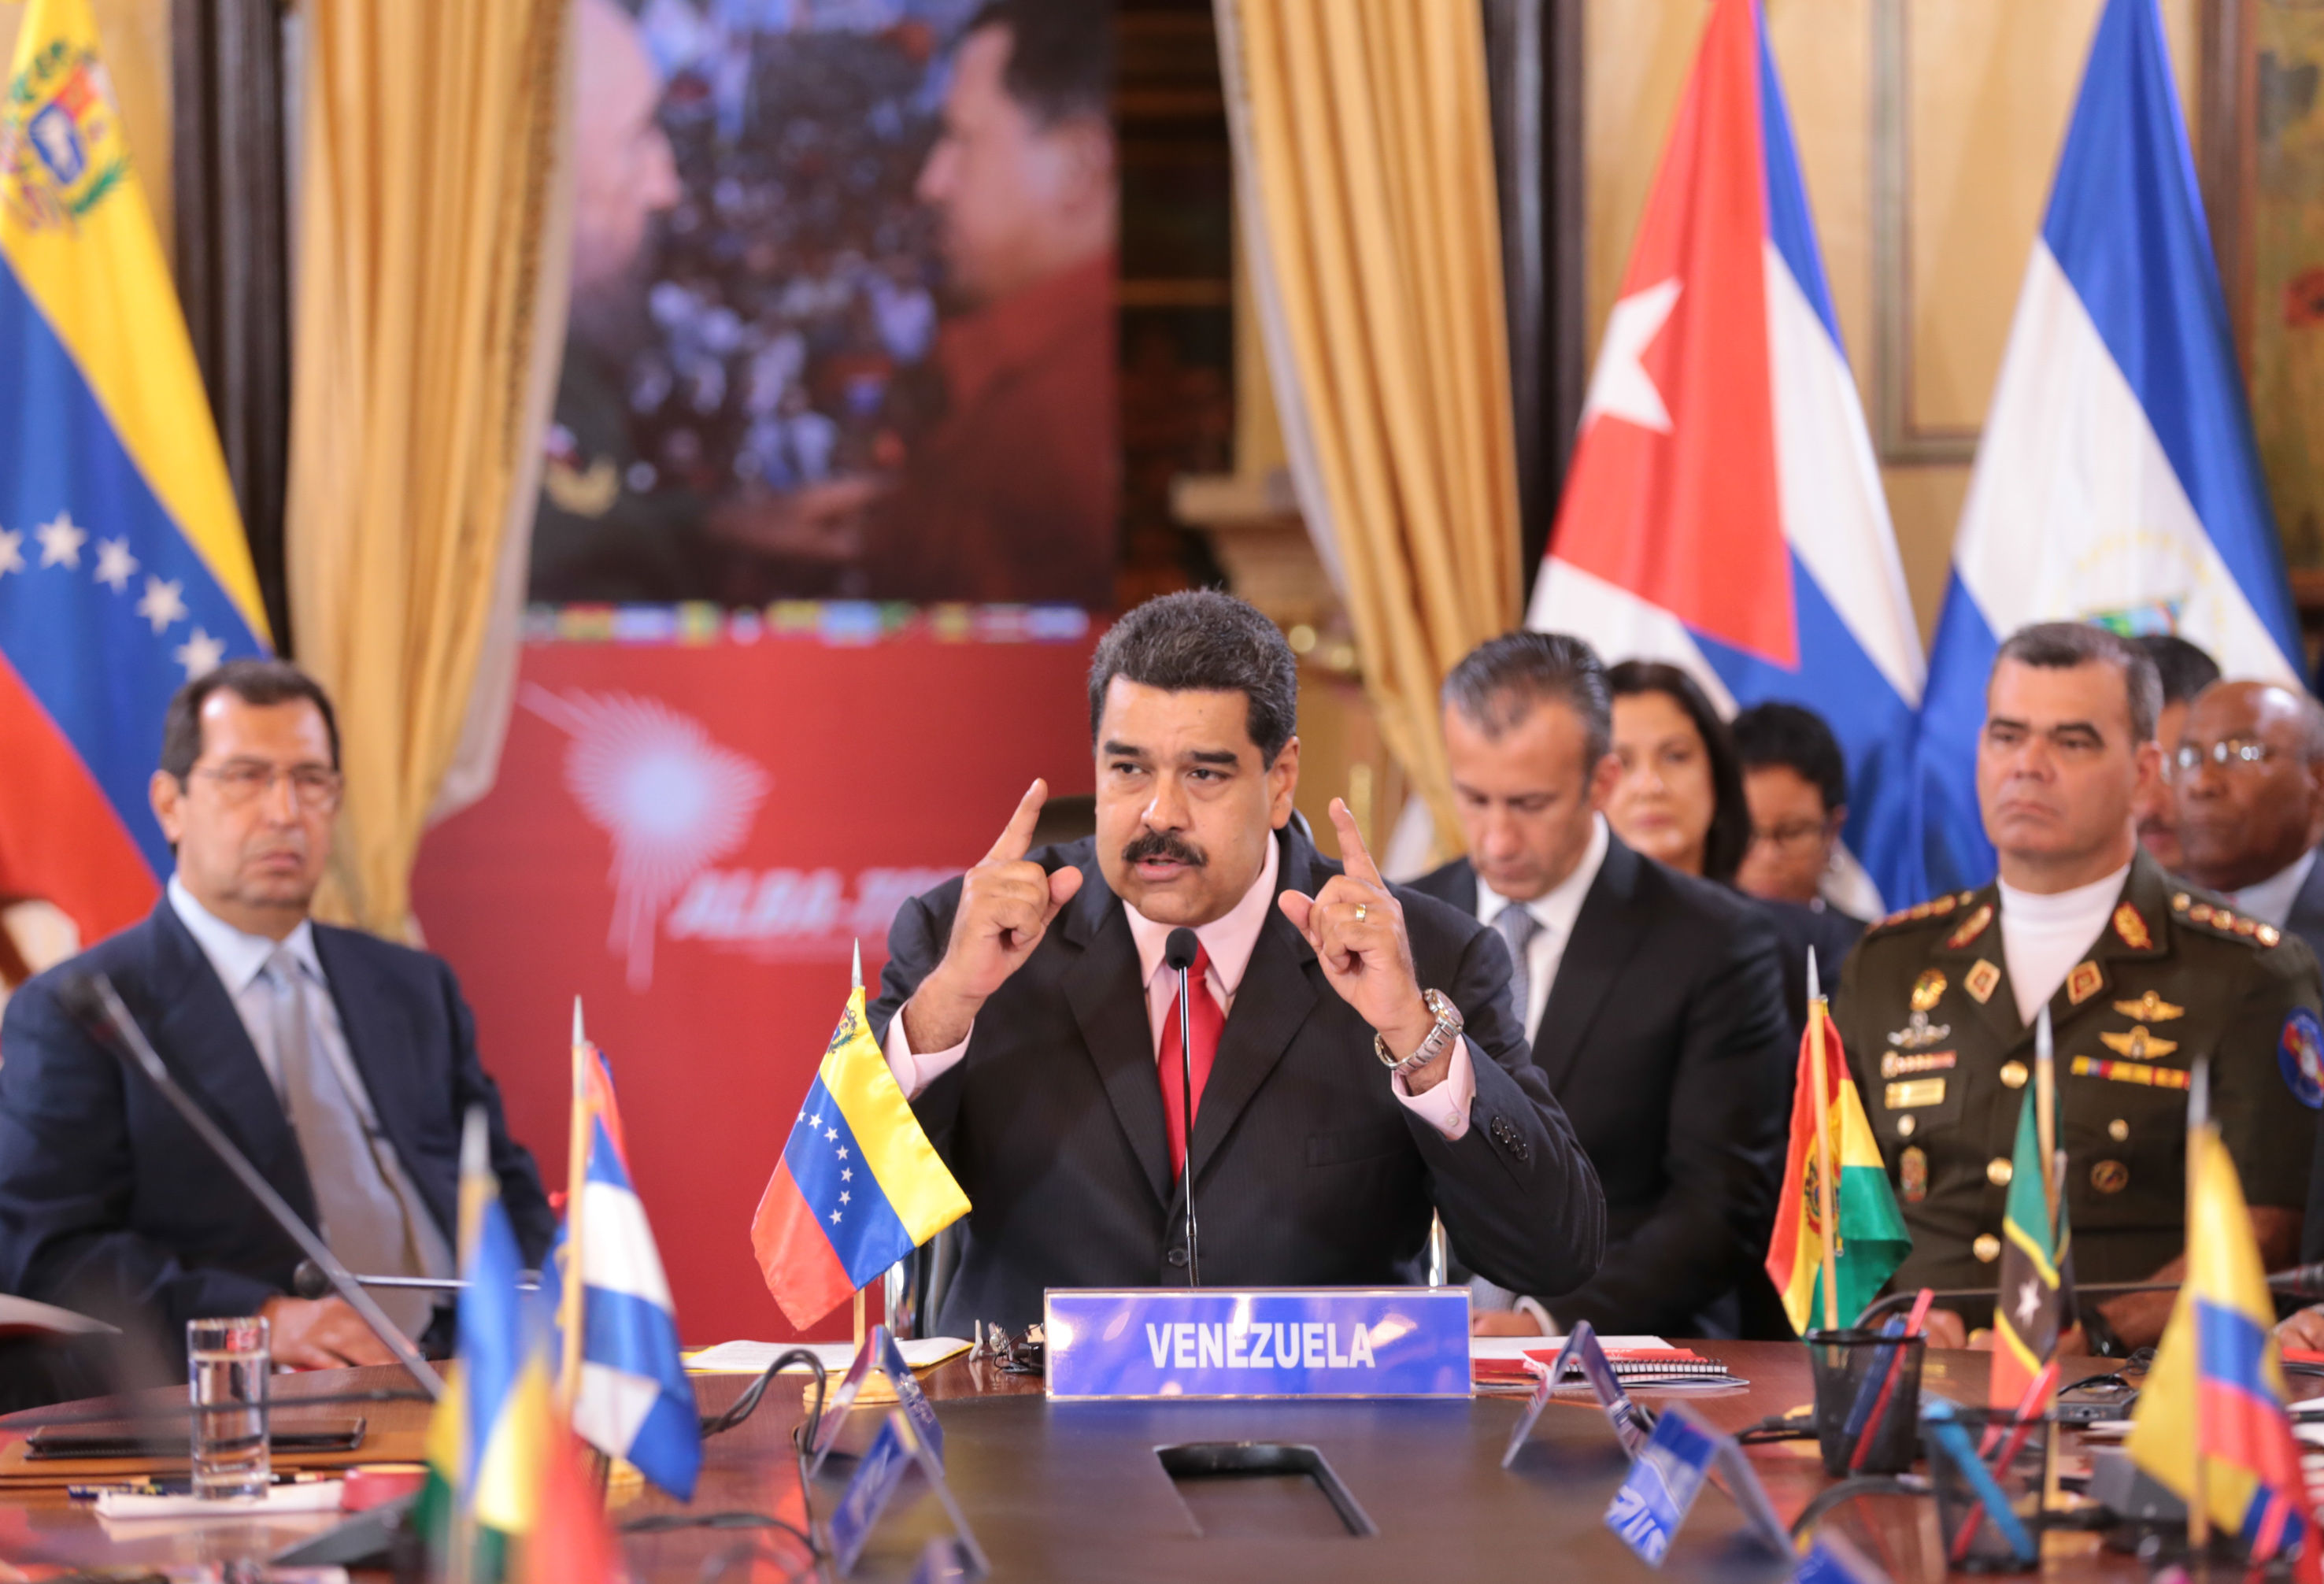 Para Maduro, una zona económica común ayudará a fortalecer la independencia, unión e identidad latinoamericana y caribeña